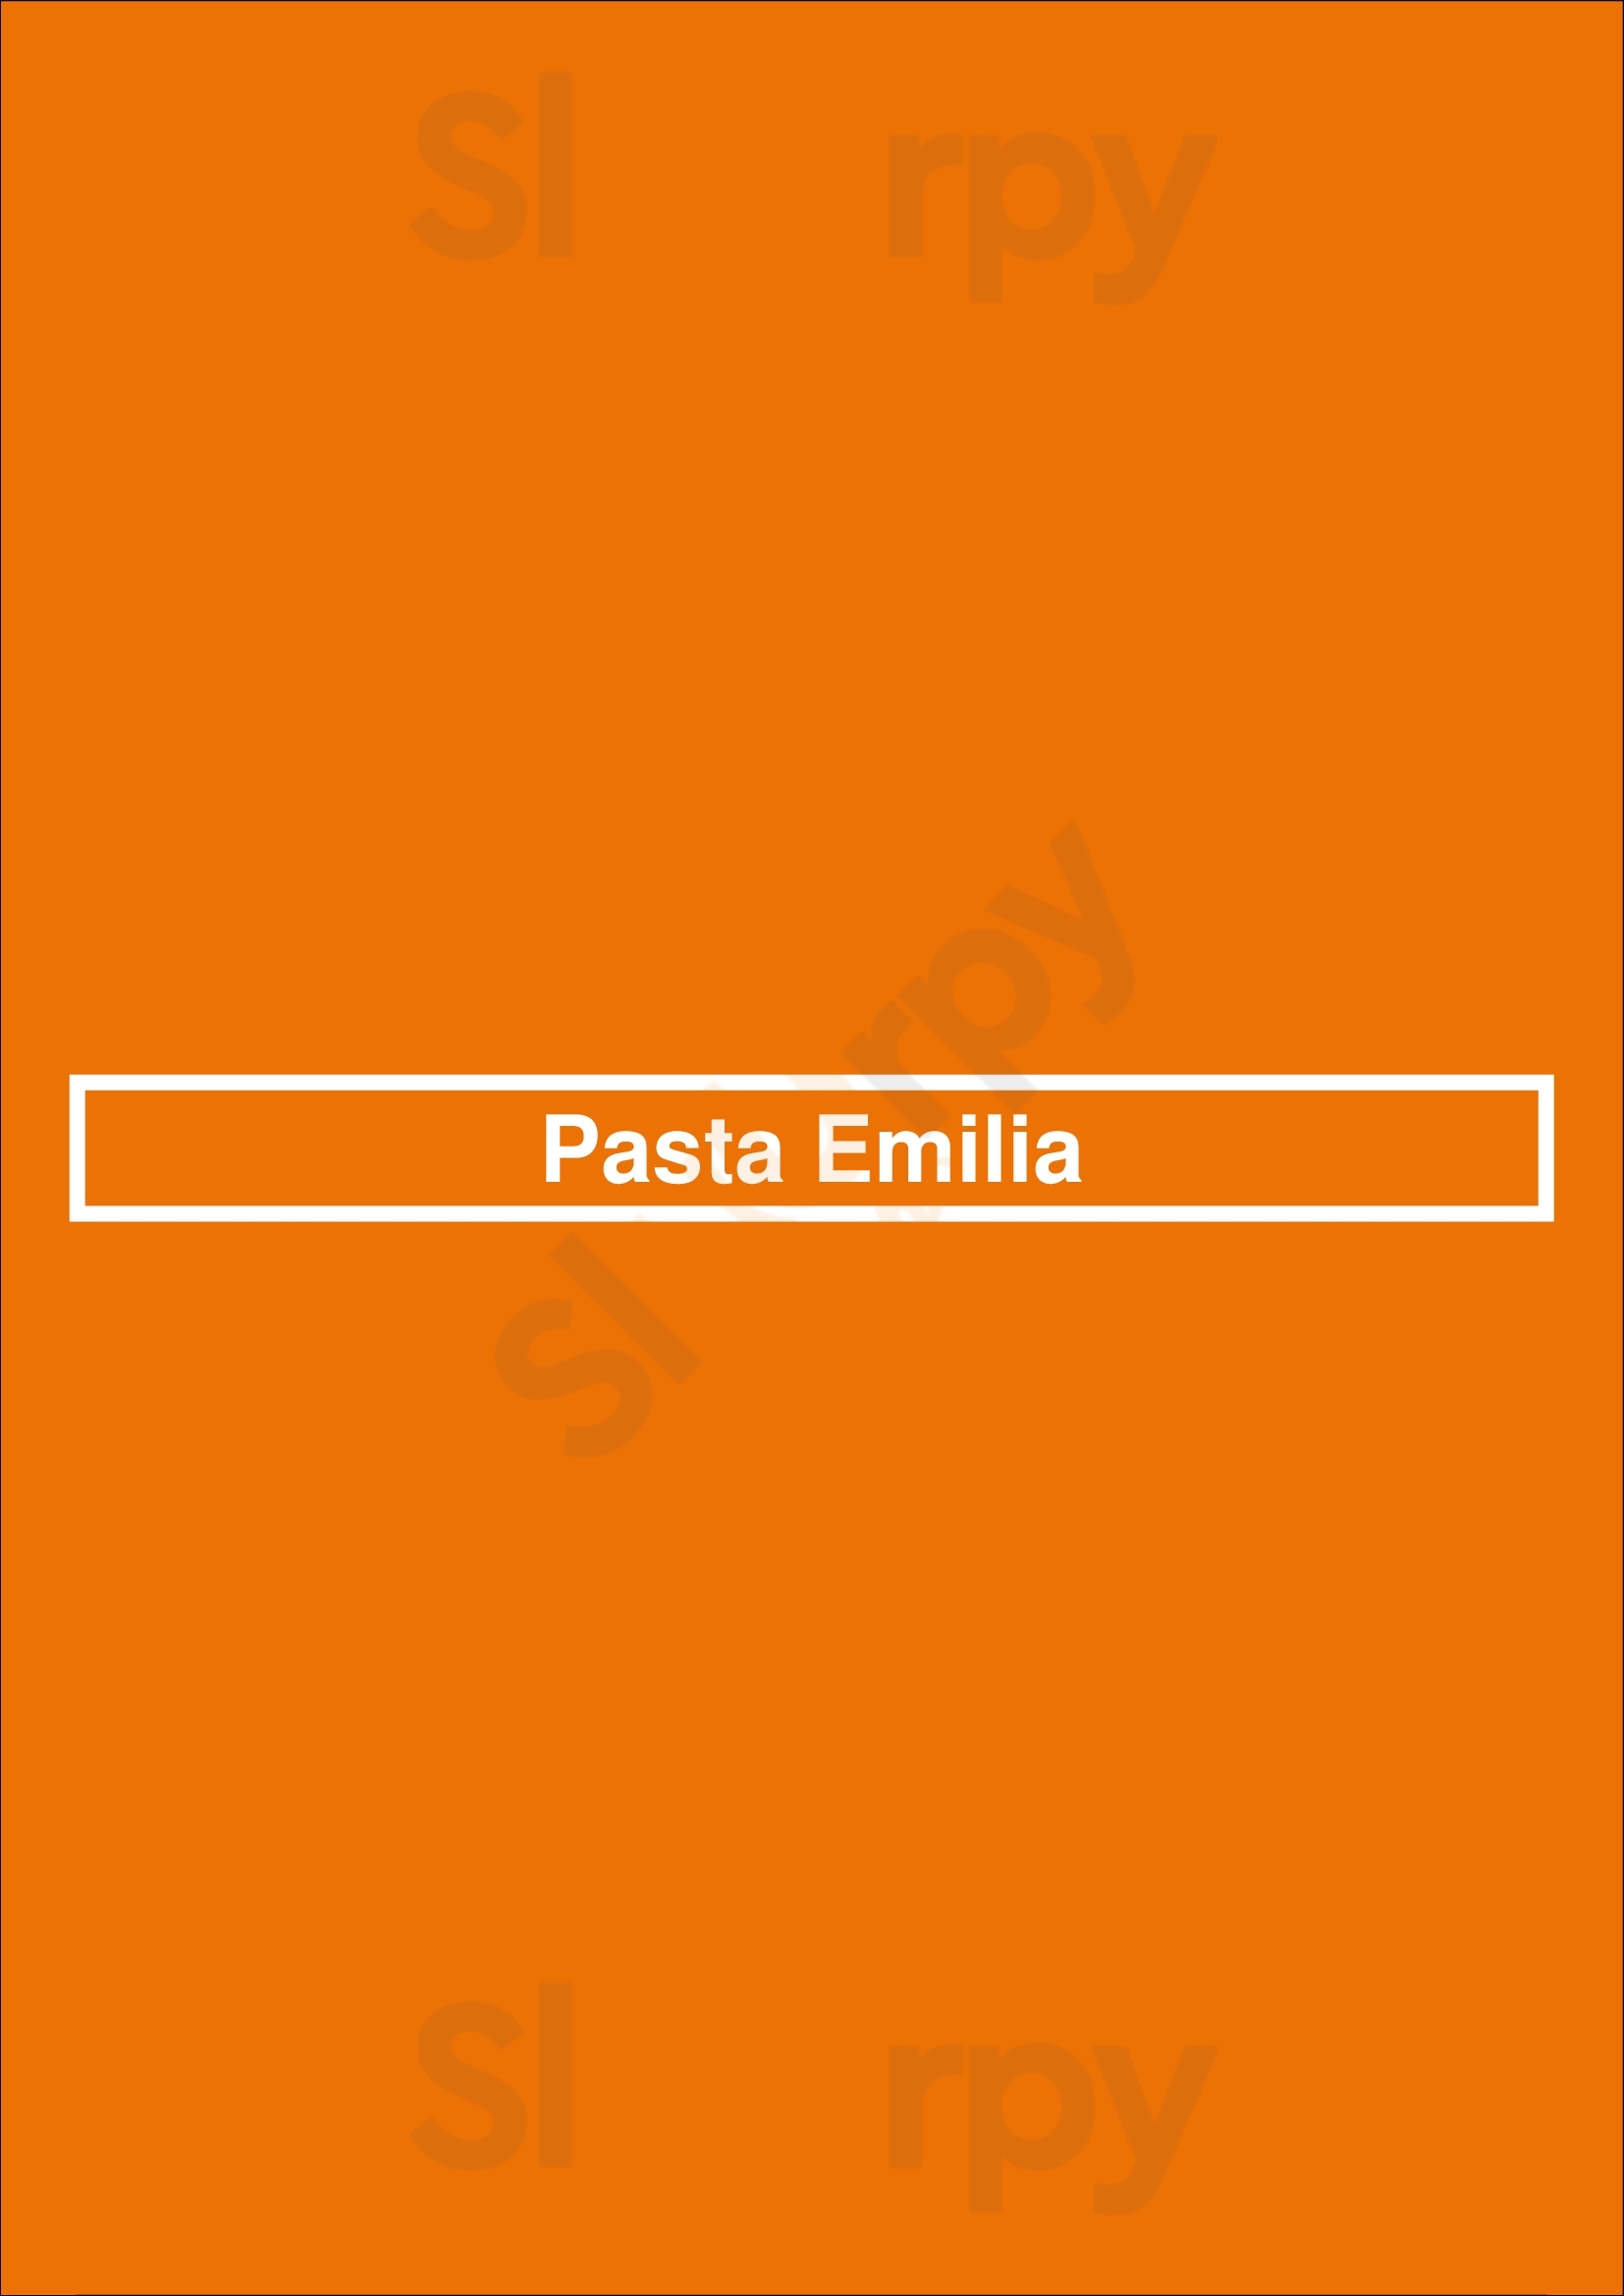 Pasta Emilia Sydney Menu - 1